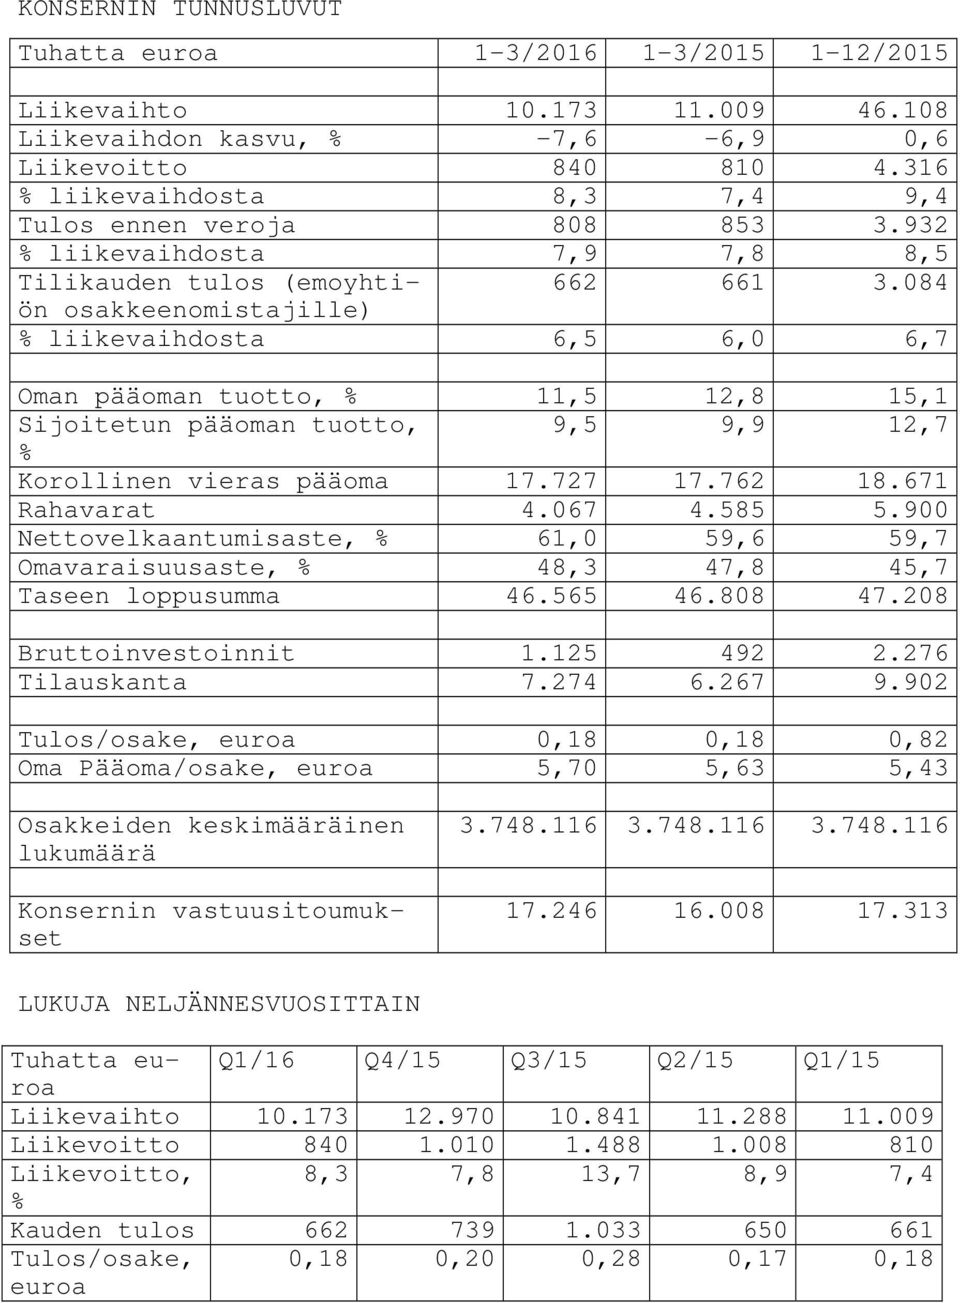 084 osakkeenomistajille) % liikevaihdosta 6,5 6,0 6,7 Oman pääoman tuotto, % 11,5 12,8 15,1 Sijoitetun pääoman tuotto, 9,5 9,9 12,7 % Korollinen vieras pääoma 17.727 17.762 18.671 Rahavarat 4.067 4.